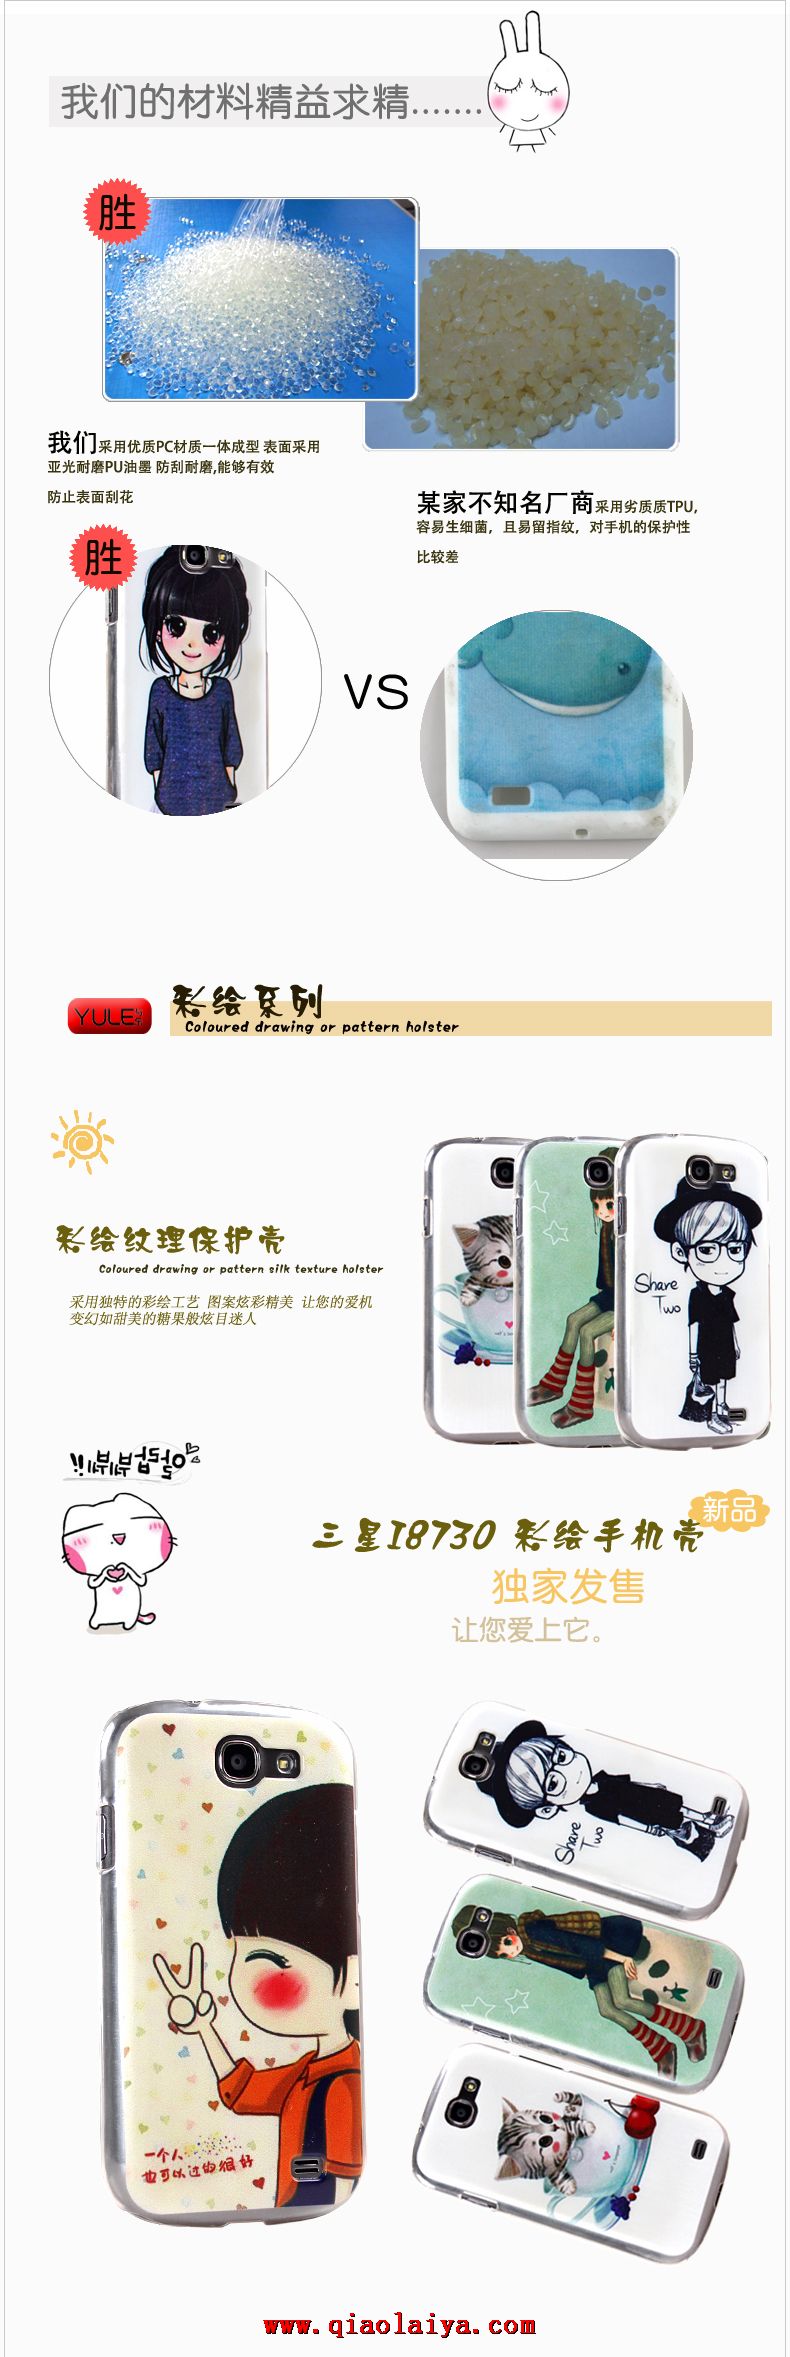 Samsung i8730 téléphone mobile Coque de protection de trois Galaxy Express téléphone portable étui